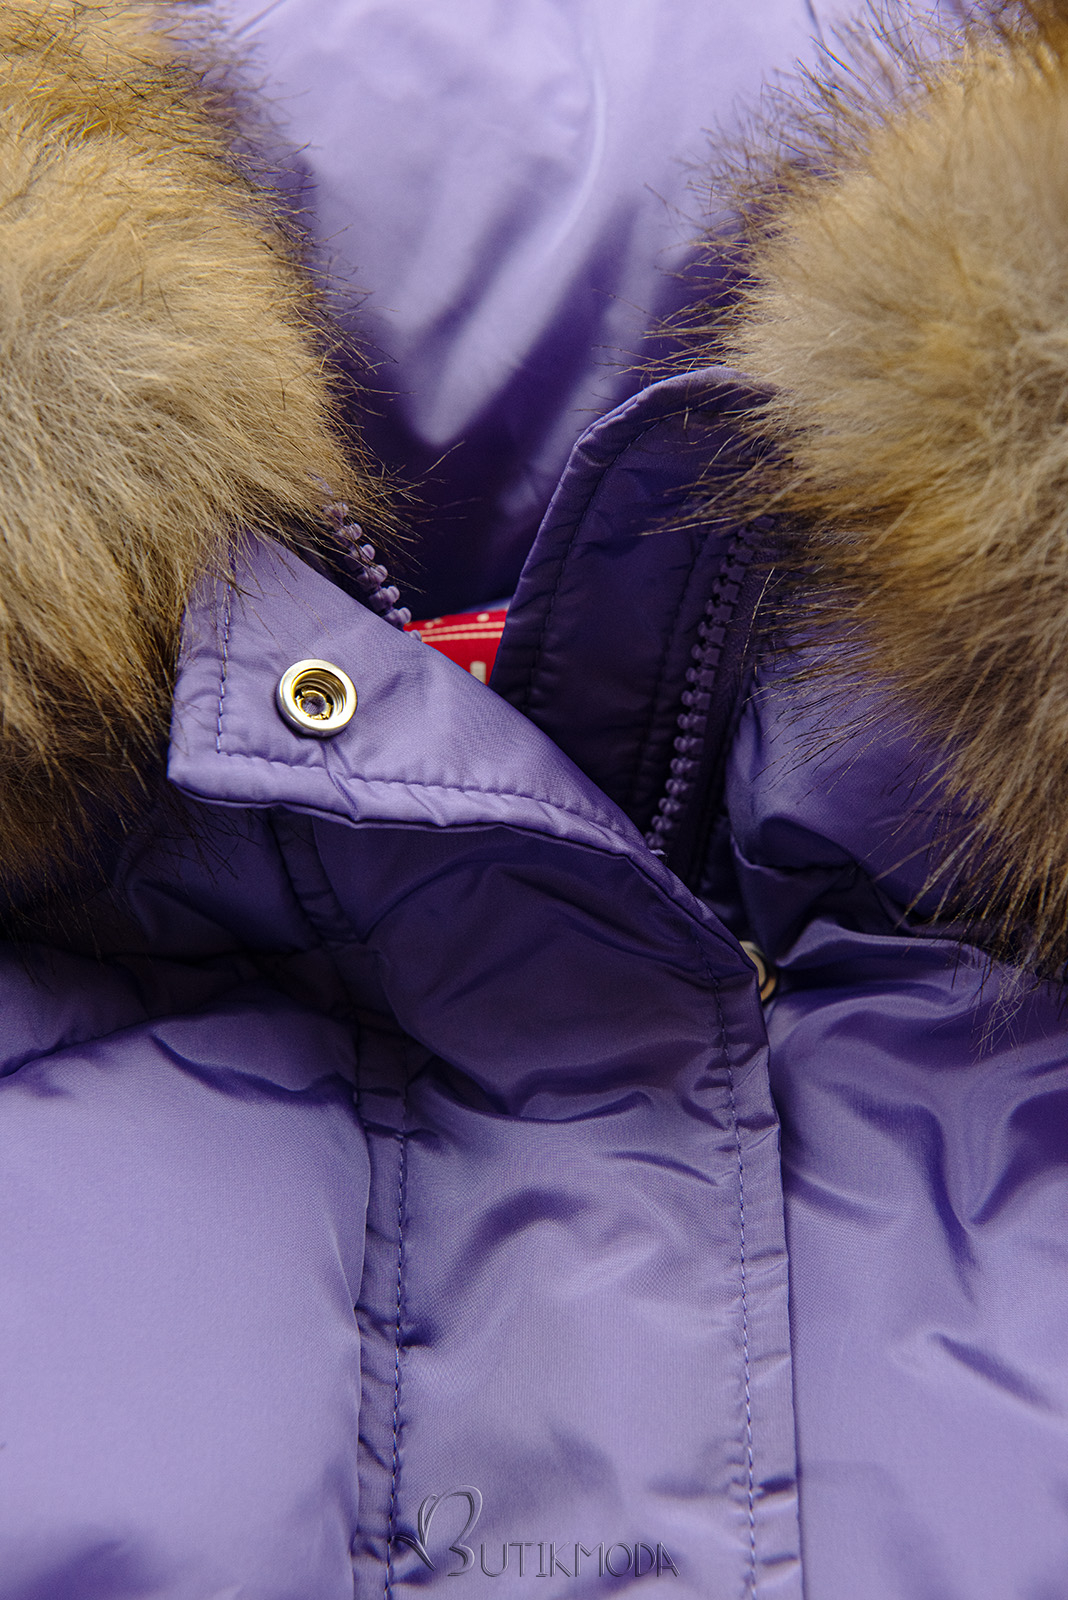 Lila színű téli kapucnis dzseki műszőrmével